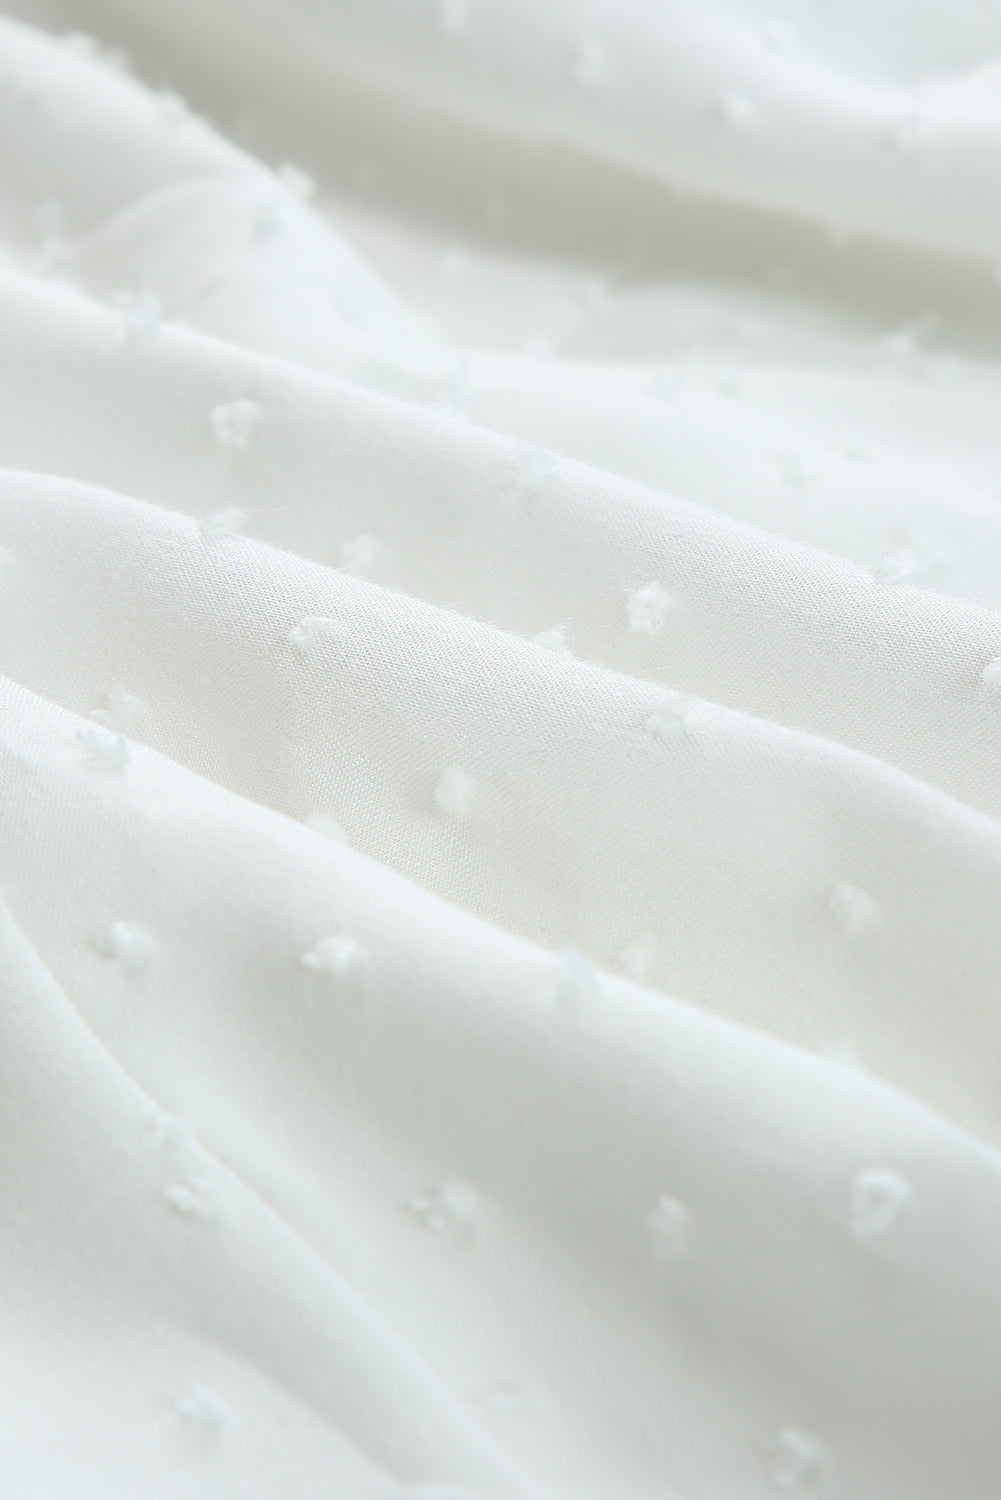 Maxi abito arricciato con spalline sottili a pois svizzeri bianchi